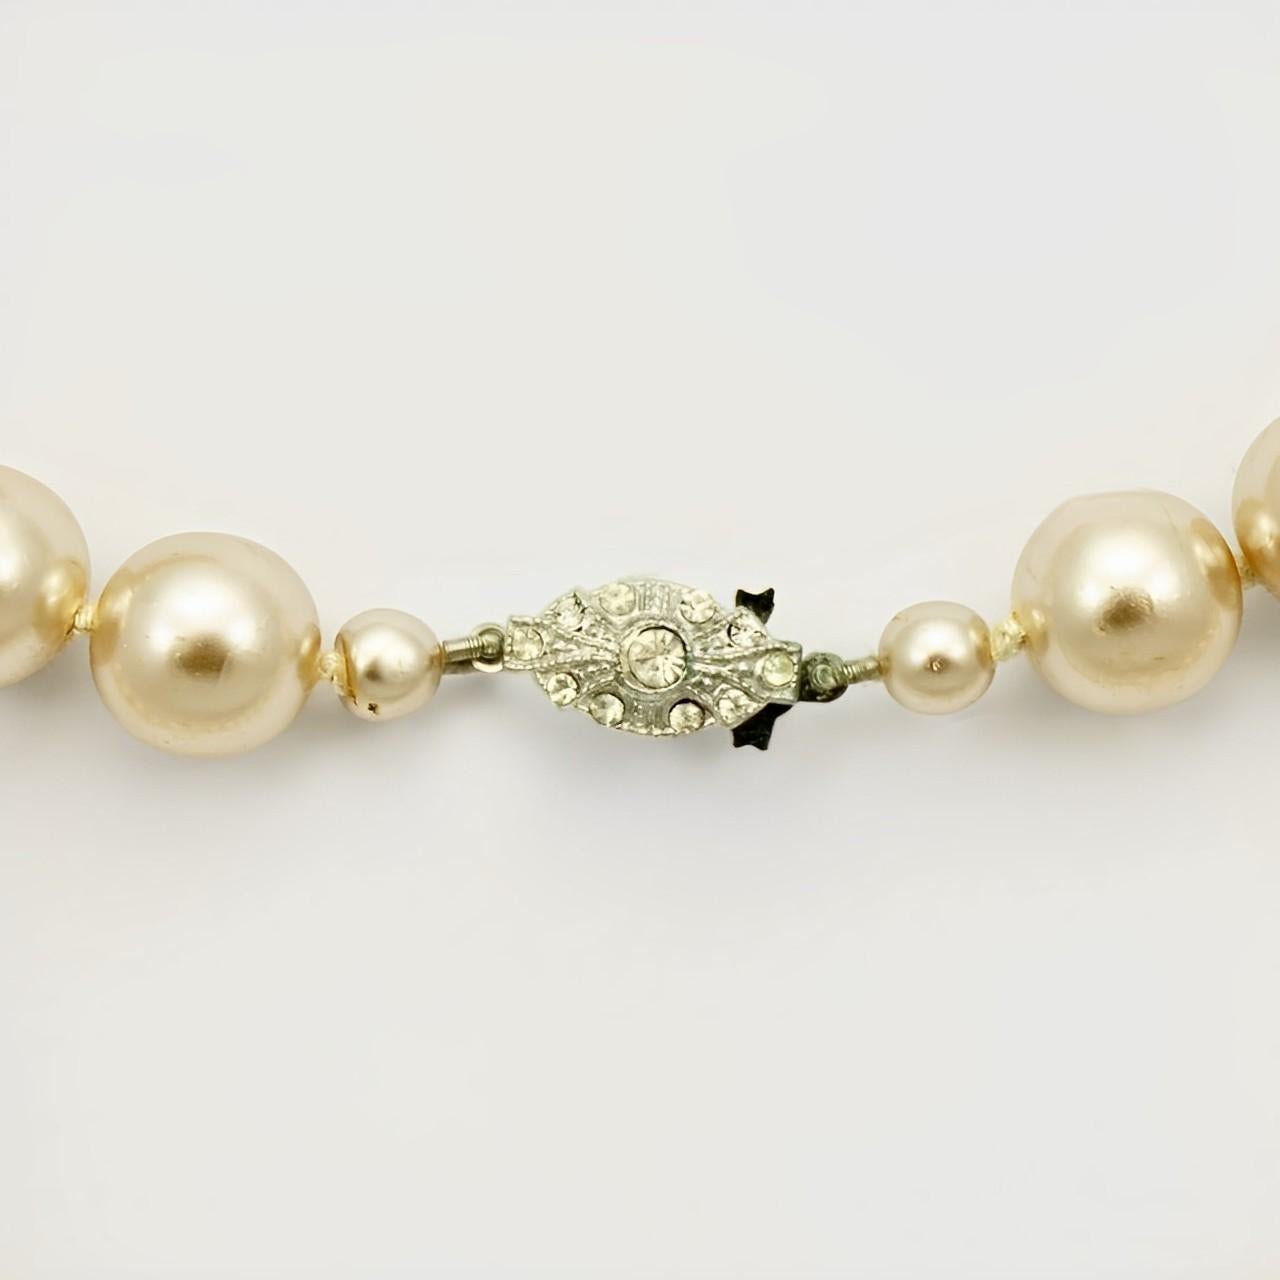 Wunderschöne champagnerfarbene Glasperlenkette mit einem silberfarbenen, mit Strasssteinen besetzten Verschluss. Die glänzenden Perlen werden zwischen den einzelnen Perlen geknotet. Messlänge 81 cm / 31,8 Zoll. Die Perlen sind 12 mm / .47 inch. Die